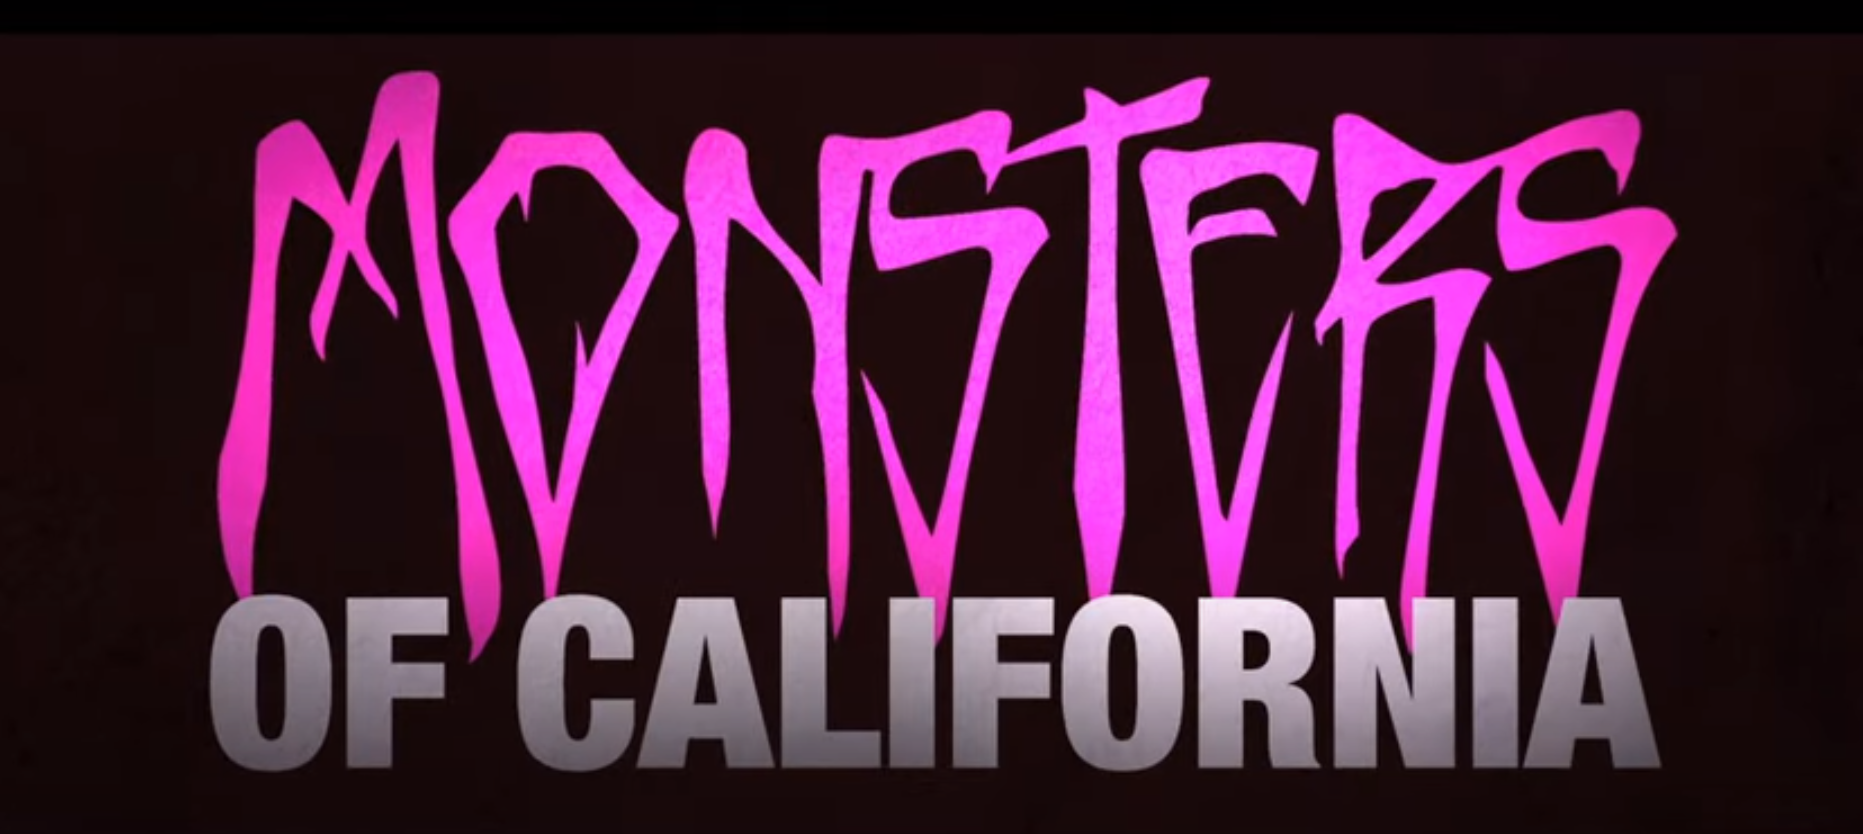 Monsters of California' - Blink 182 Musician Tom DeLonge Directing